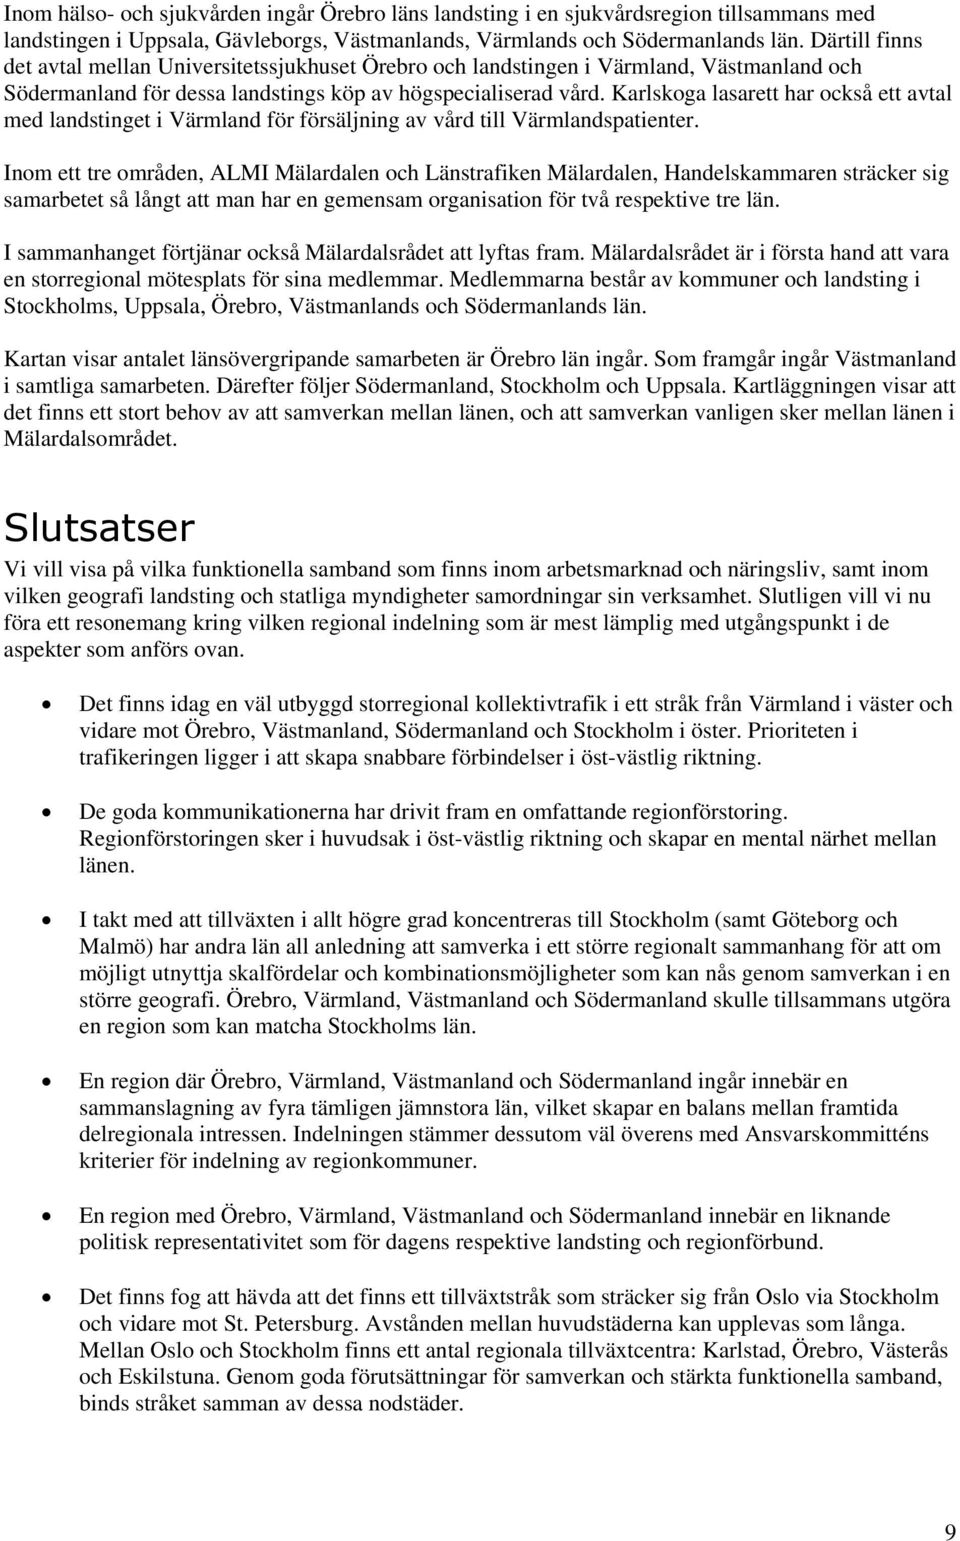 Karlskoga lasarett har också ett avtal med landstinget i Värmland för försäljning av vård till Värmlandspatienter.